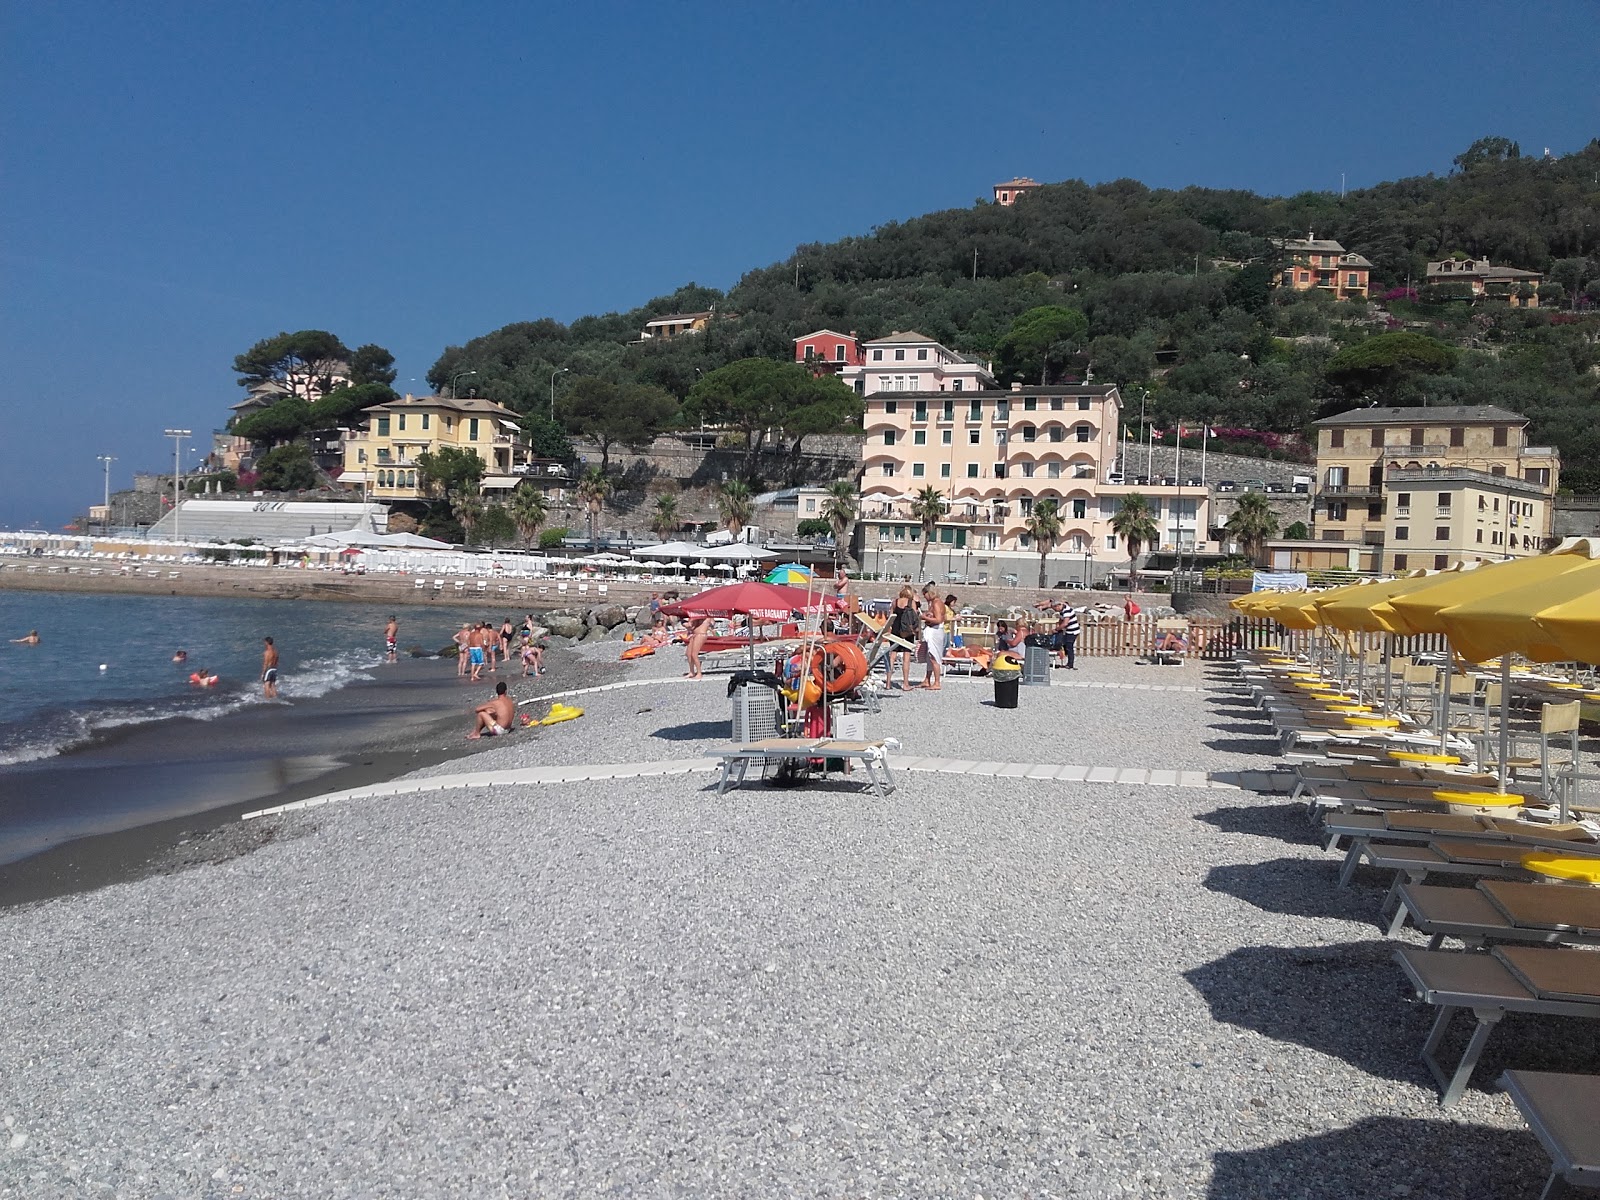 Foto de Spiaggia di Recco com pequena baía